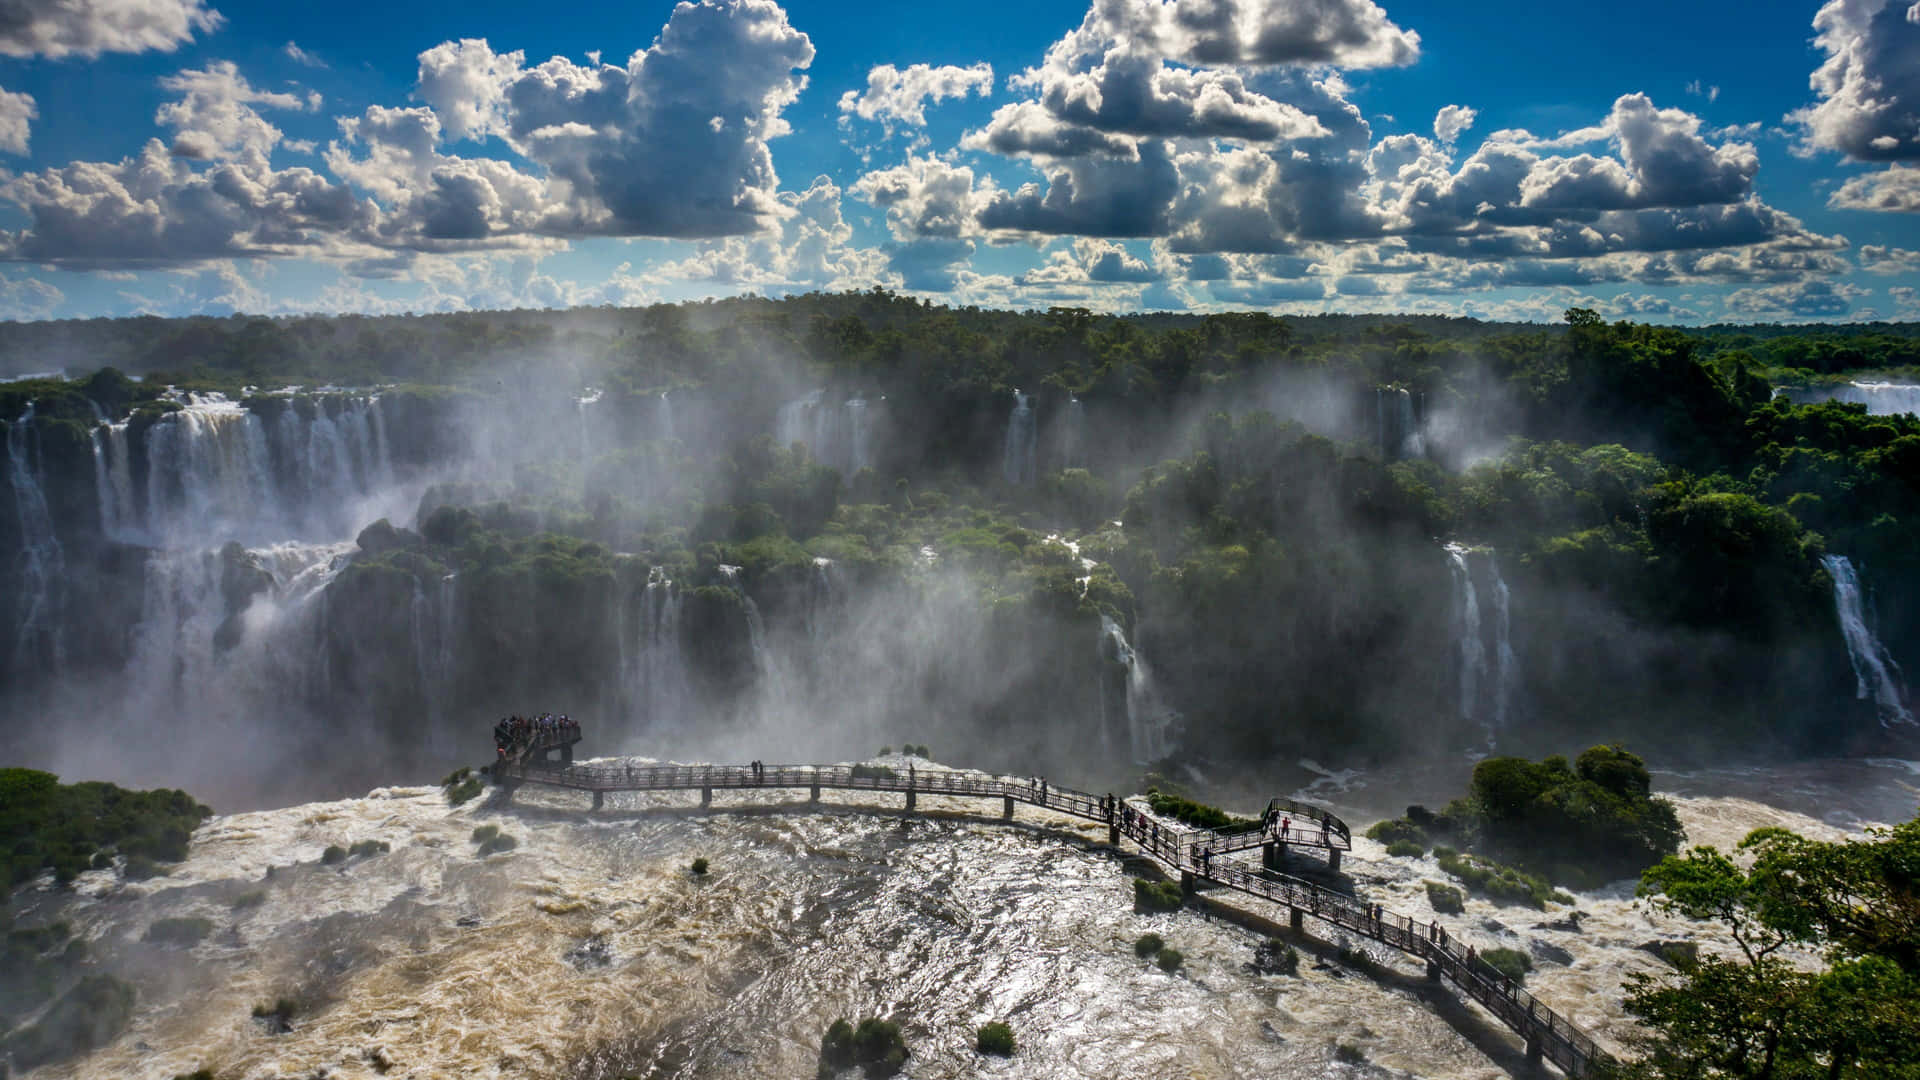 Iguazufalls - Världens Sjunde Underverk. Wallpaper